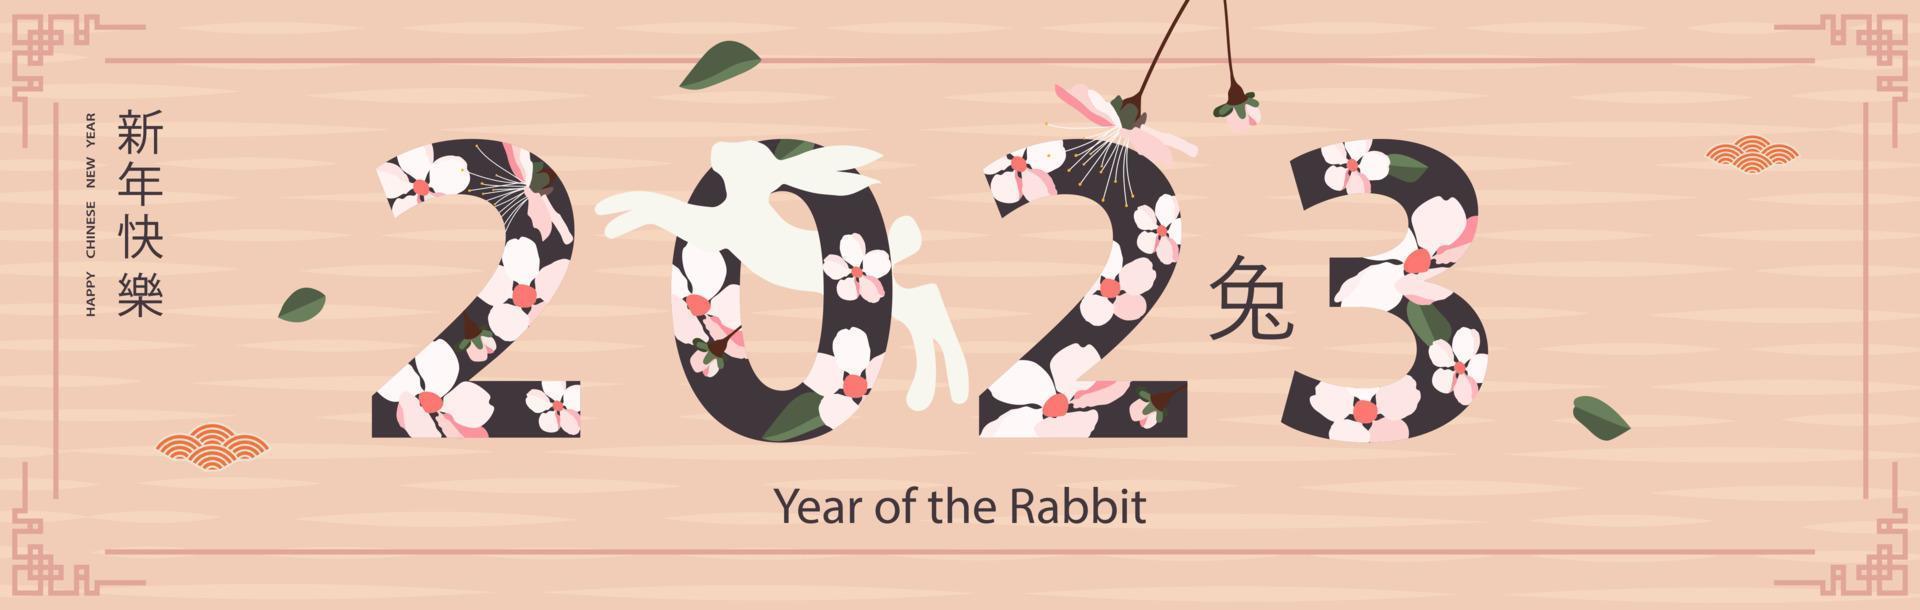 plantilla de banner para el diseño de año nuevo chino con marco con patrones tradicionales y flores de sakura estilizadas. conejo saltador. traducción del chino - feliz año nuevo, símbolo de conejo. vector